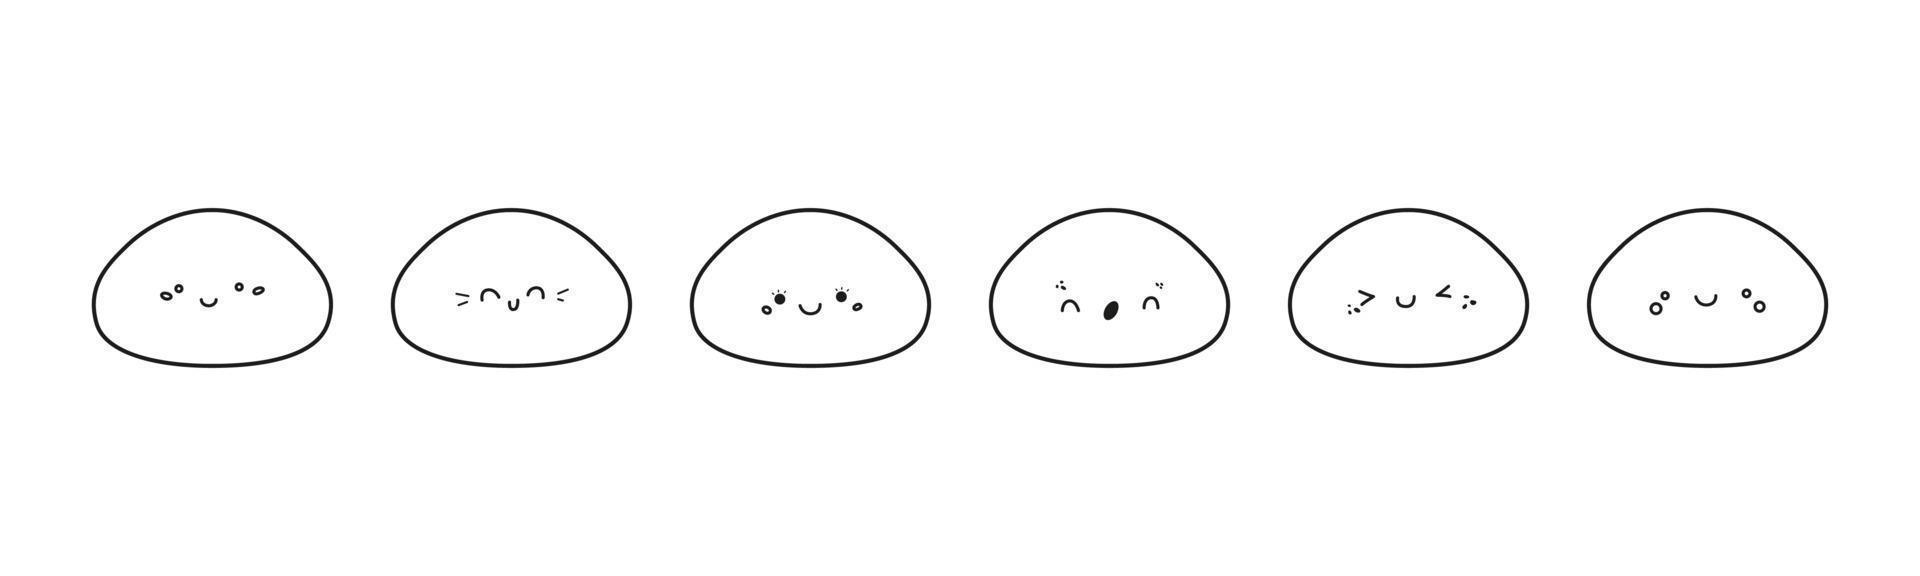 joli ensemble de vecteurs d'icônes mochi. personnages de dessins animés avec divers visages kawaii. dessert japonais au riz sucré dans un style doodle. illustration de logo mochi isolée sur fond blanc vecteur